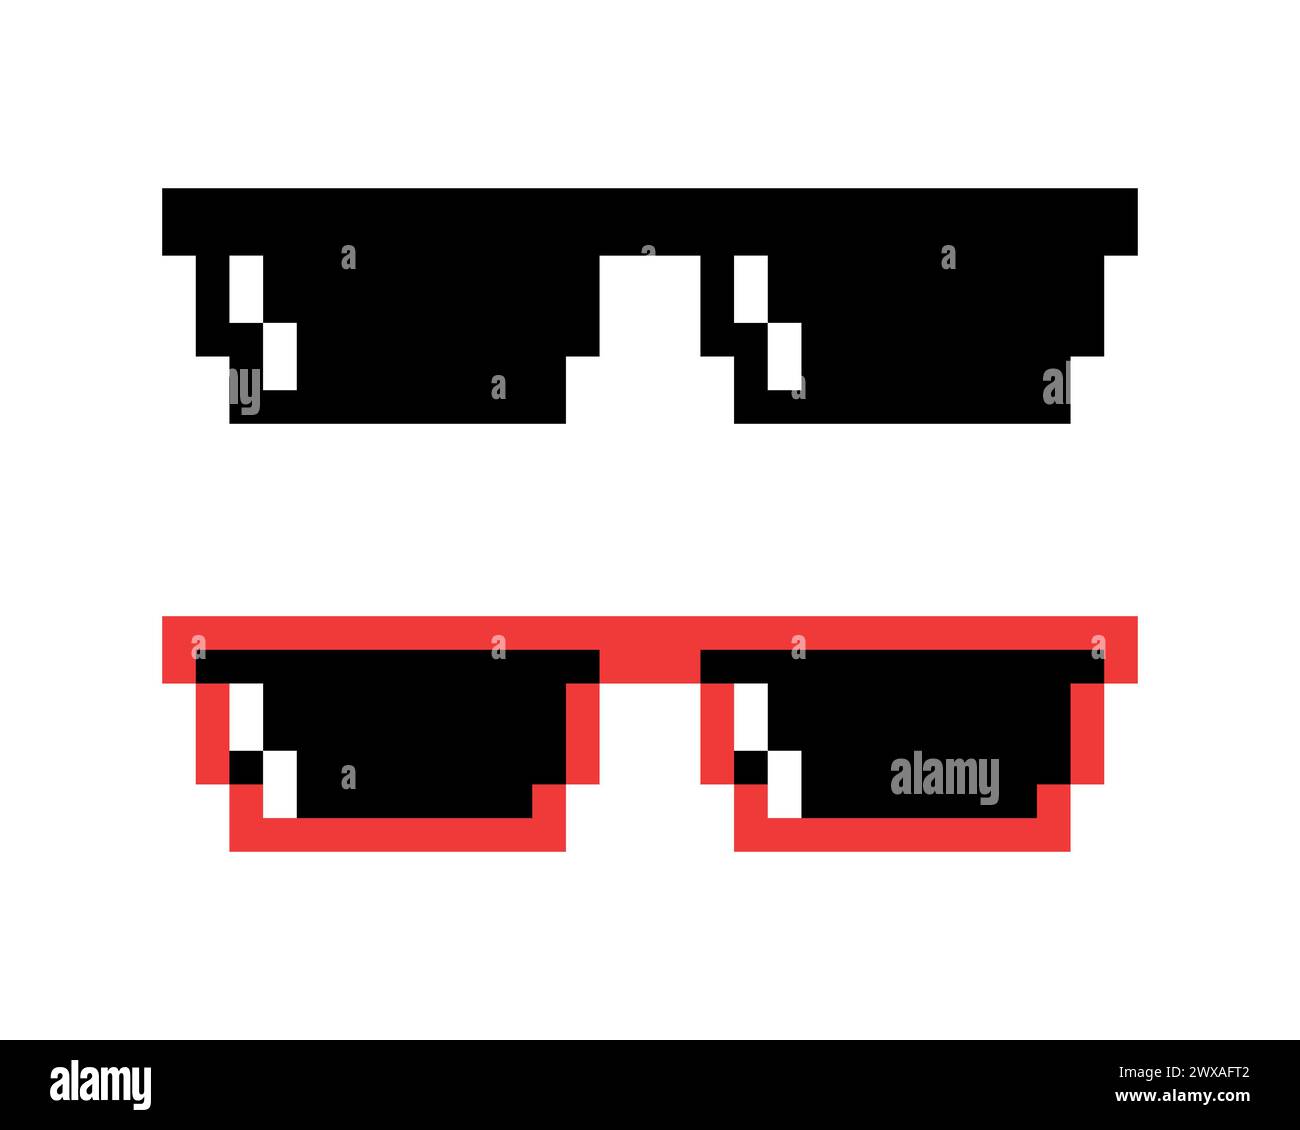 Occhiali da sole con pixel vettoriali, set di icone Pixel Boss in stile retrò a 8 bit. Summer Meme Game 8-bit Sunglasses Design, Mafia Gangster Funky Illustrazione Vettoriale